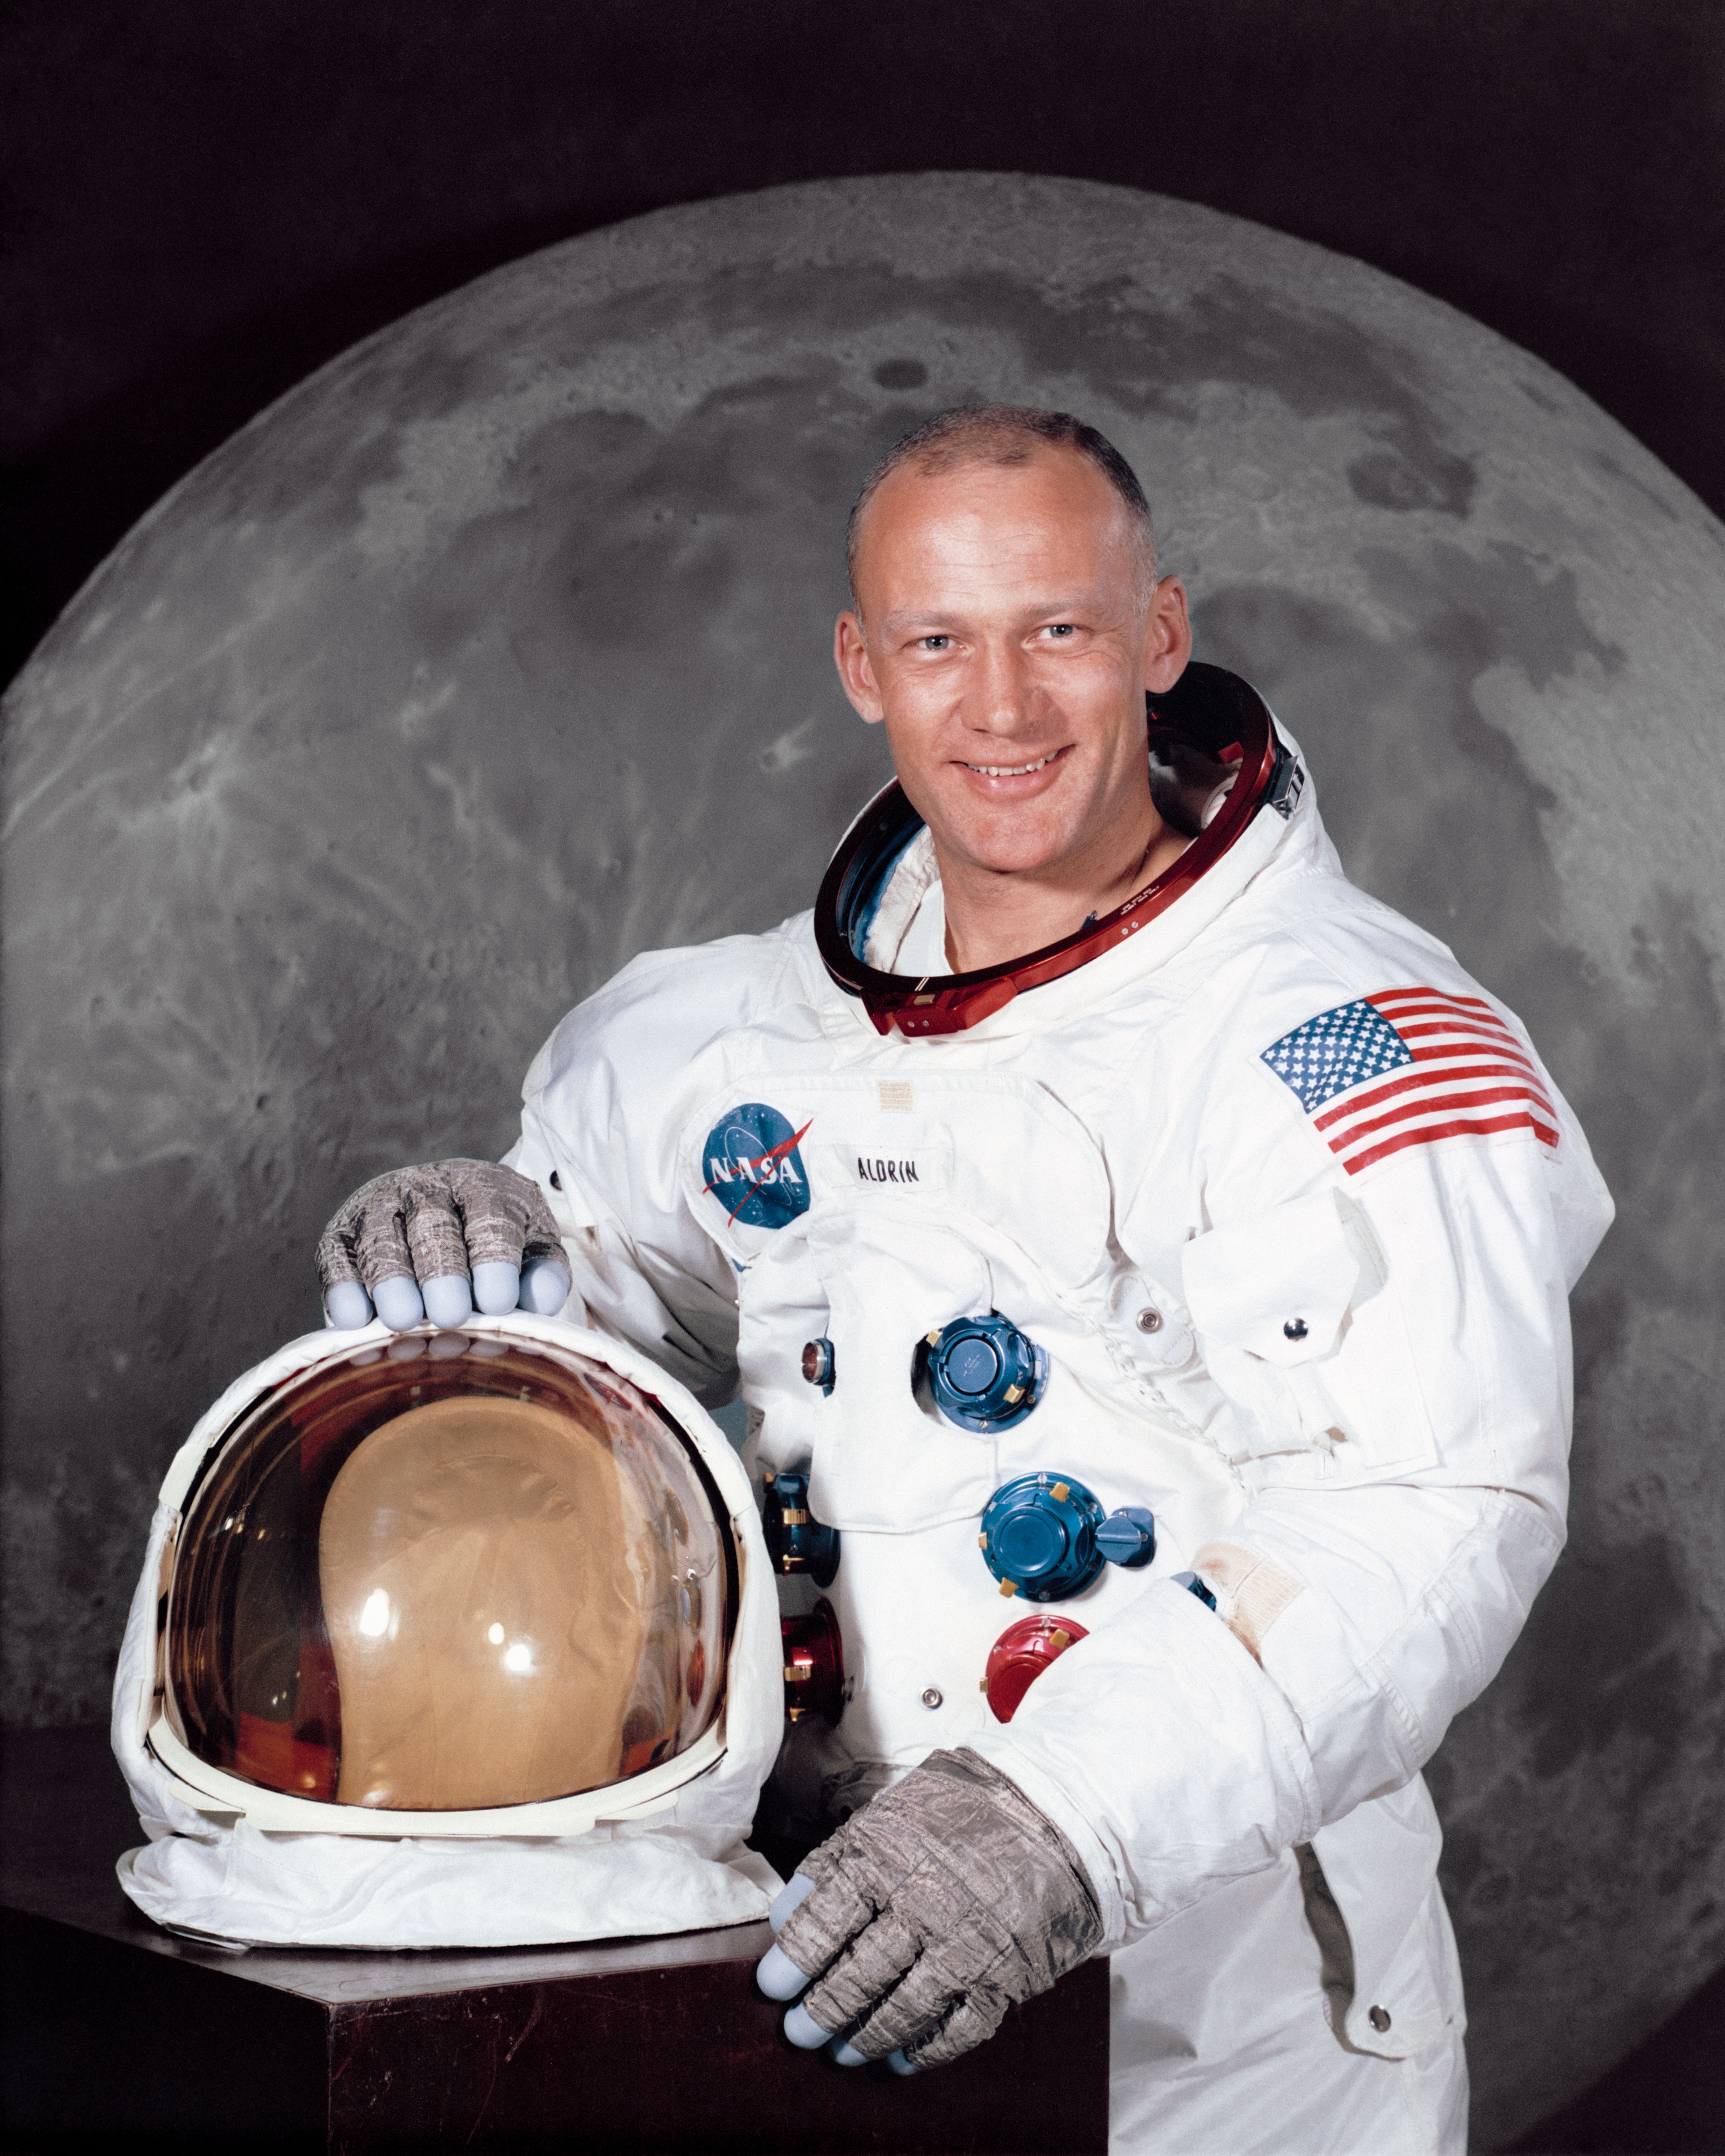 auteur Buzz Aldrin de la citation Quand j'étais jeune, j'ai lu des articles sur Buck Rogers et Flash Gordon. En tant qu'étudiant, j'écrivais des rapports en anglais sur la science-fiction. Et en tant que pilote de chasse, j'ai observé la sélection des astronautes de Mercury. Tout cela était fascinant, mais je ne pensais vraiment pas en faire partie un jour. Ce n'est que lorsque mon bon ami Ed White a été sélectionné comme astronaute Gemini que j'ai décidé de rejoindre la NASA dans le cadre du programme Apollo.